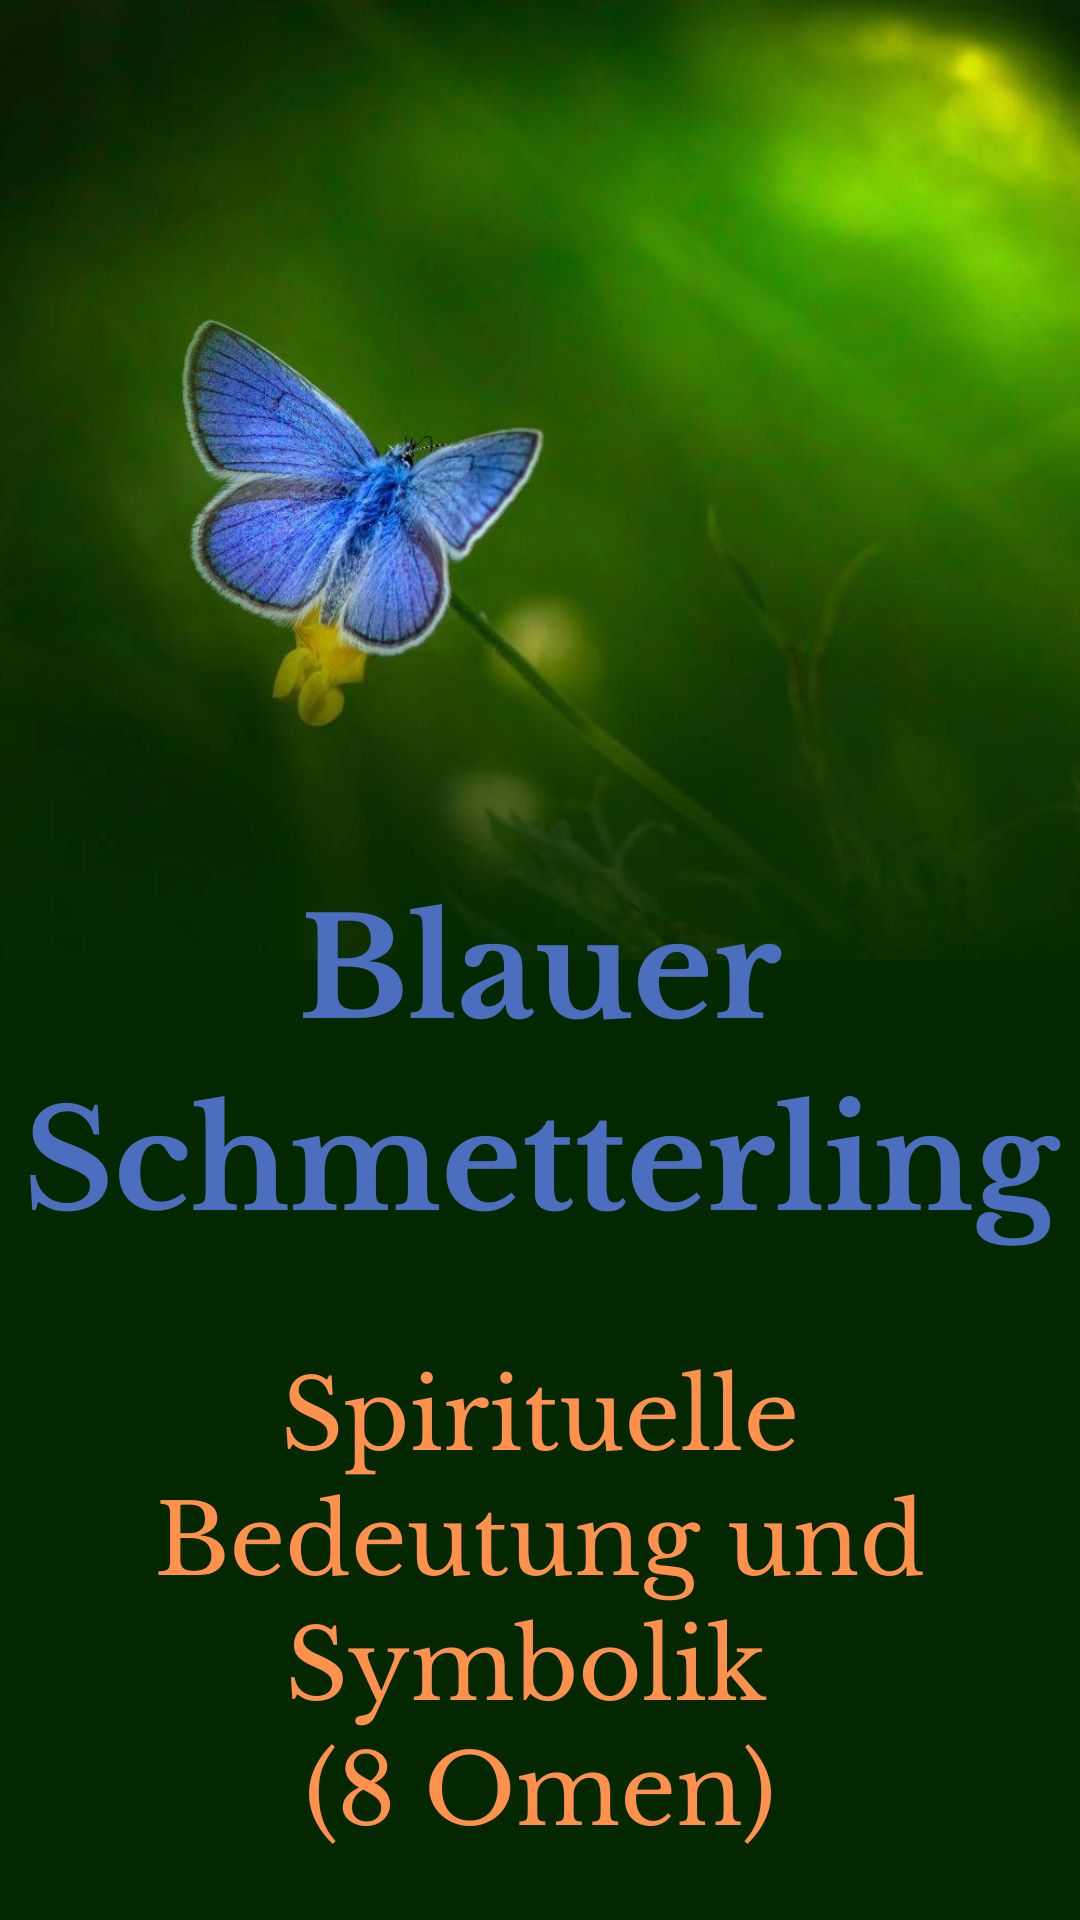 Blauer-Schmetterling-Spirituelle-Bedeutung-und-Symbolik-8-Omen